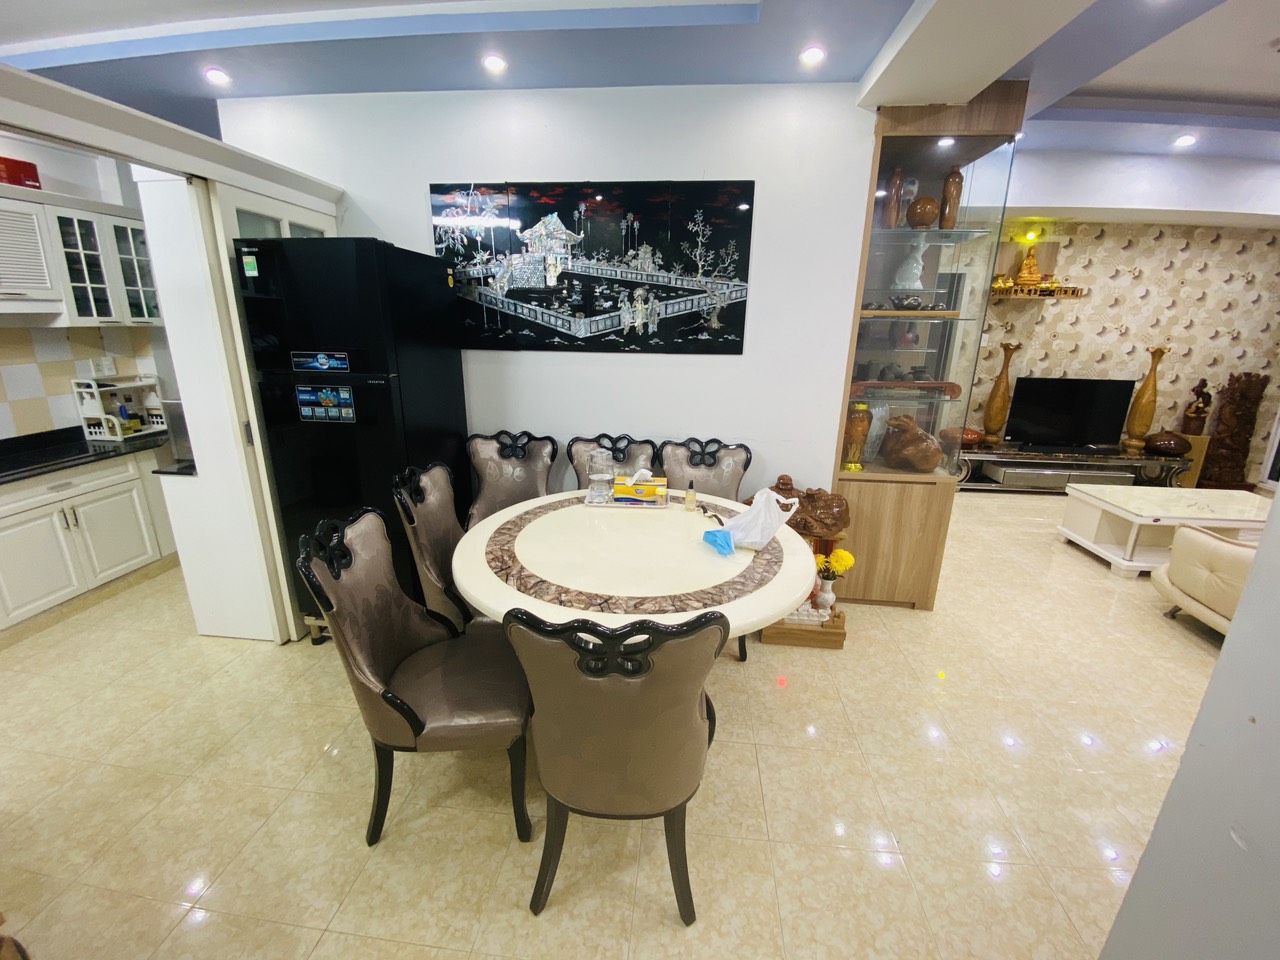 Cho thuê căn hộ Fortuna Kim Hồng, quận Tân Phú, DT 95m2 2PN, Full nội thất cao cấp như hình, giá rẻ 